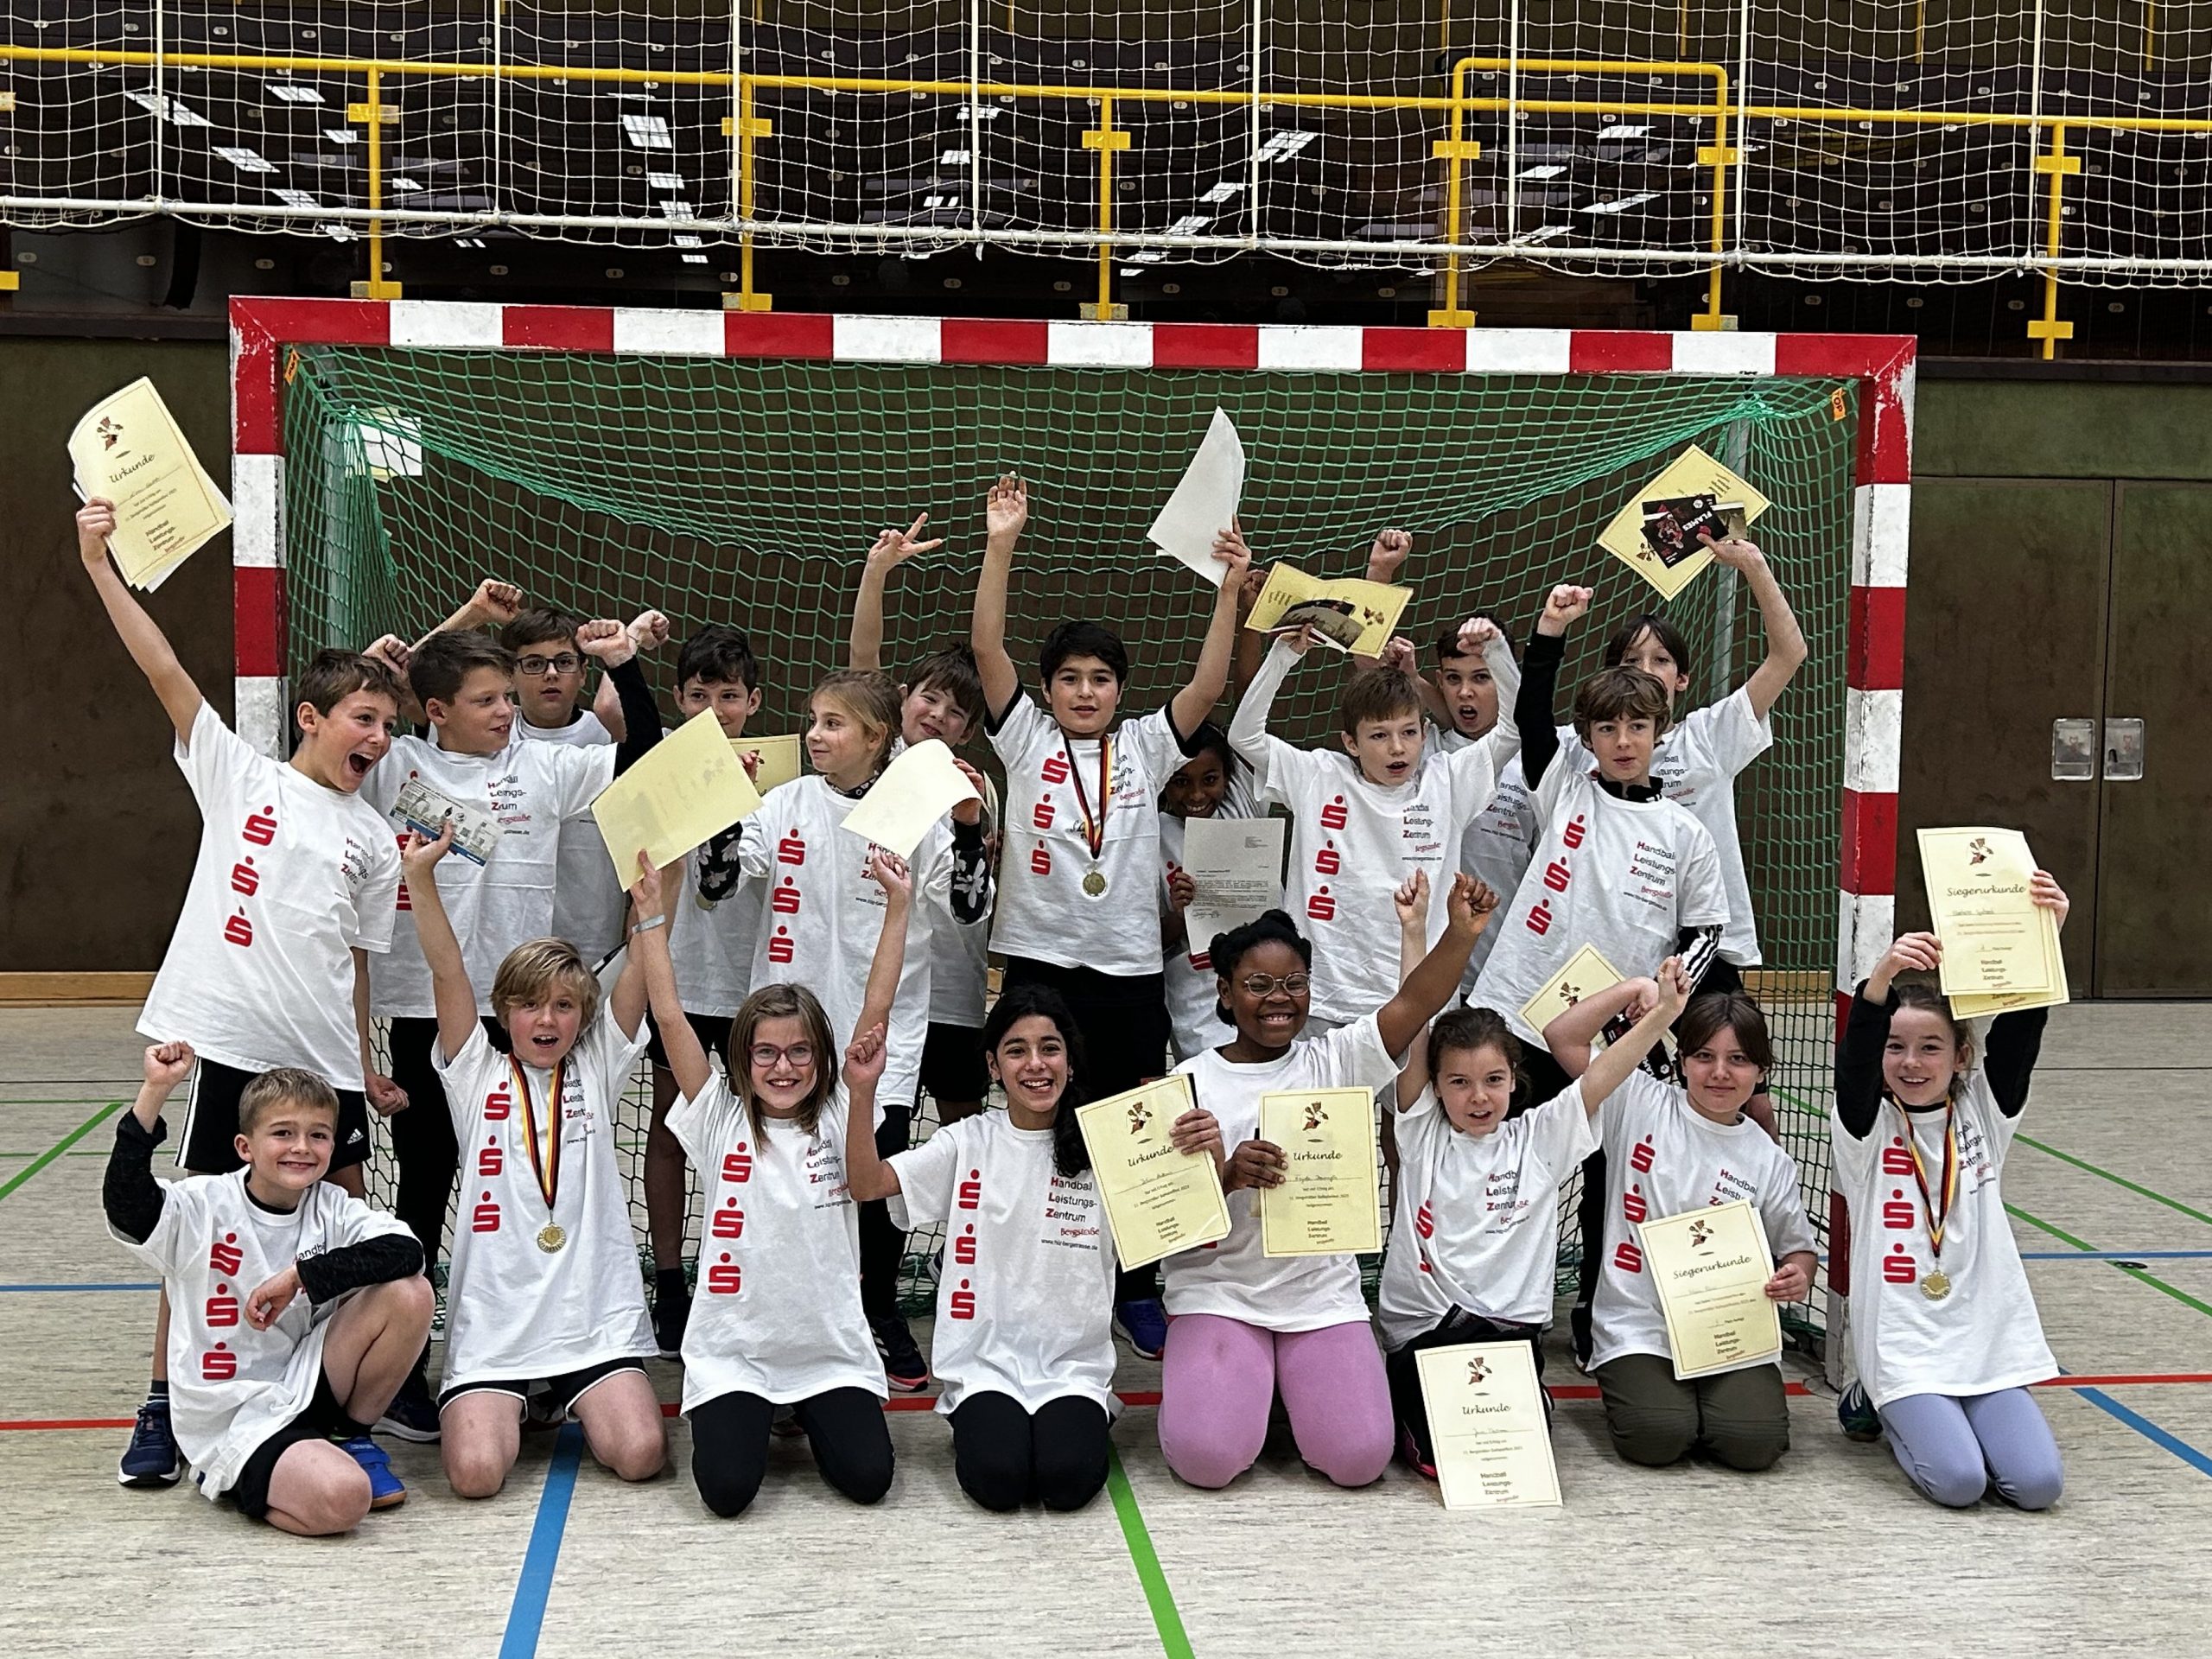 Die Sieger des Brennballturniers der Schillerschule Bensheim